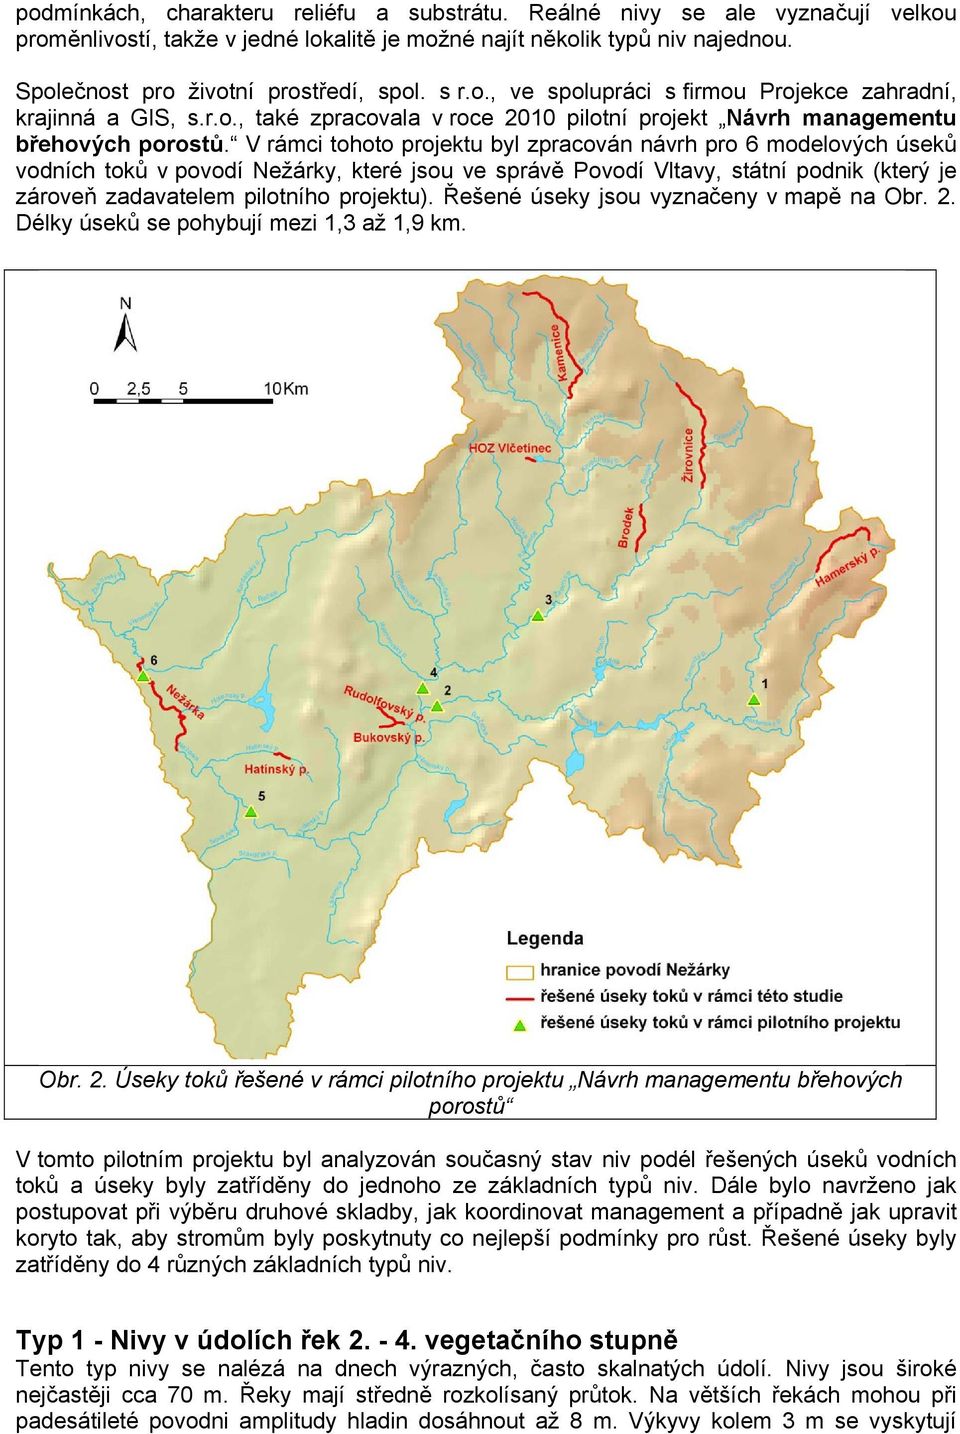 V rámci tohoto projektu byl zpracován návrh pro 6 modelových úseků vodních toků v povodí Nežárky, které jsou ve správě Povodí Vltavy, státní podnik (který je zároveň zadavatelem pilotního projektu).